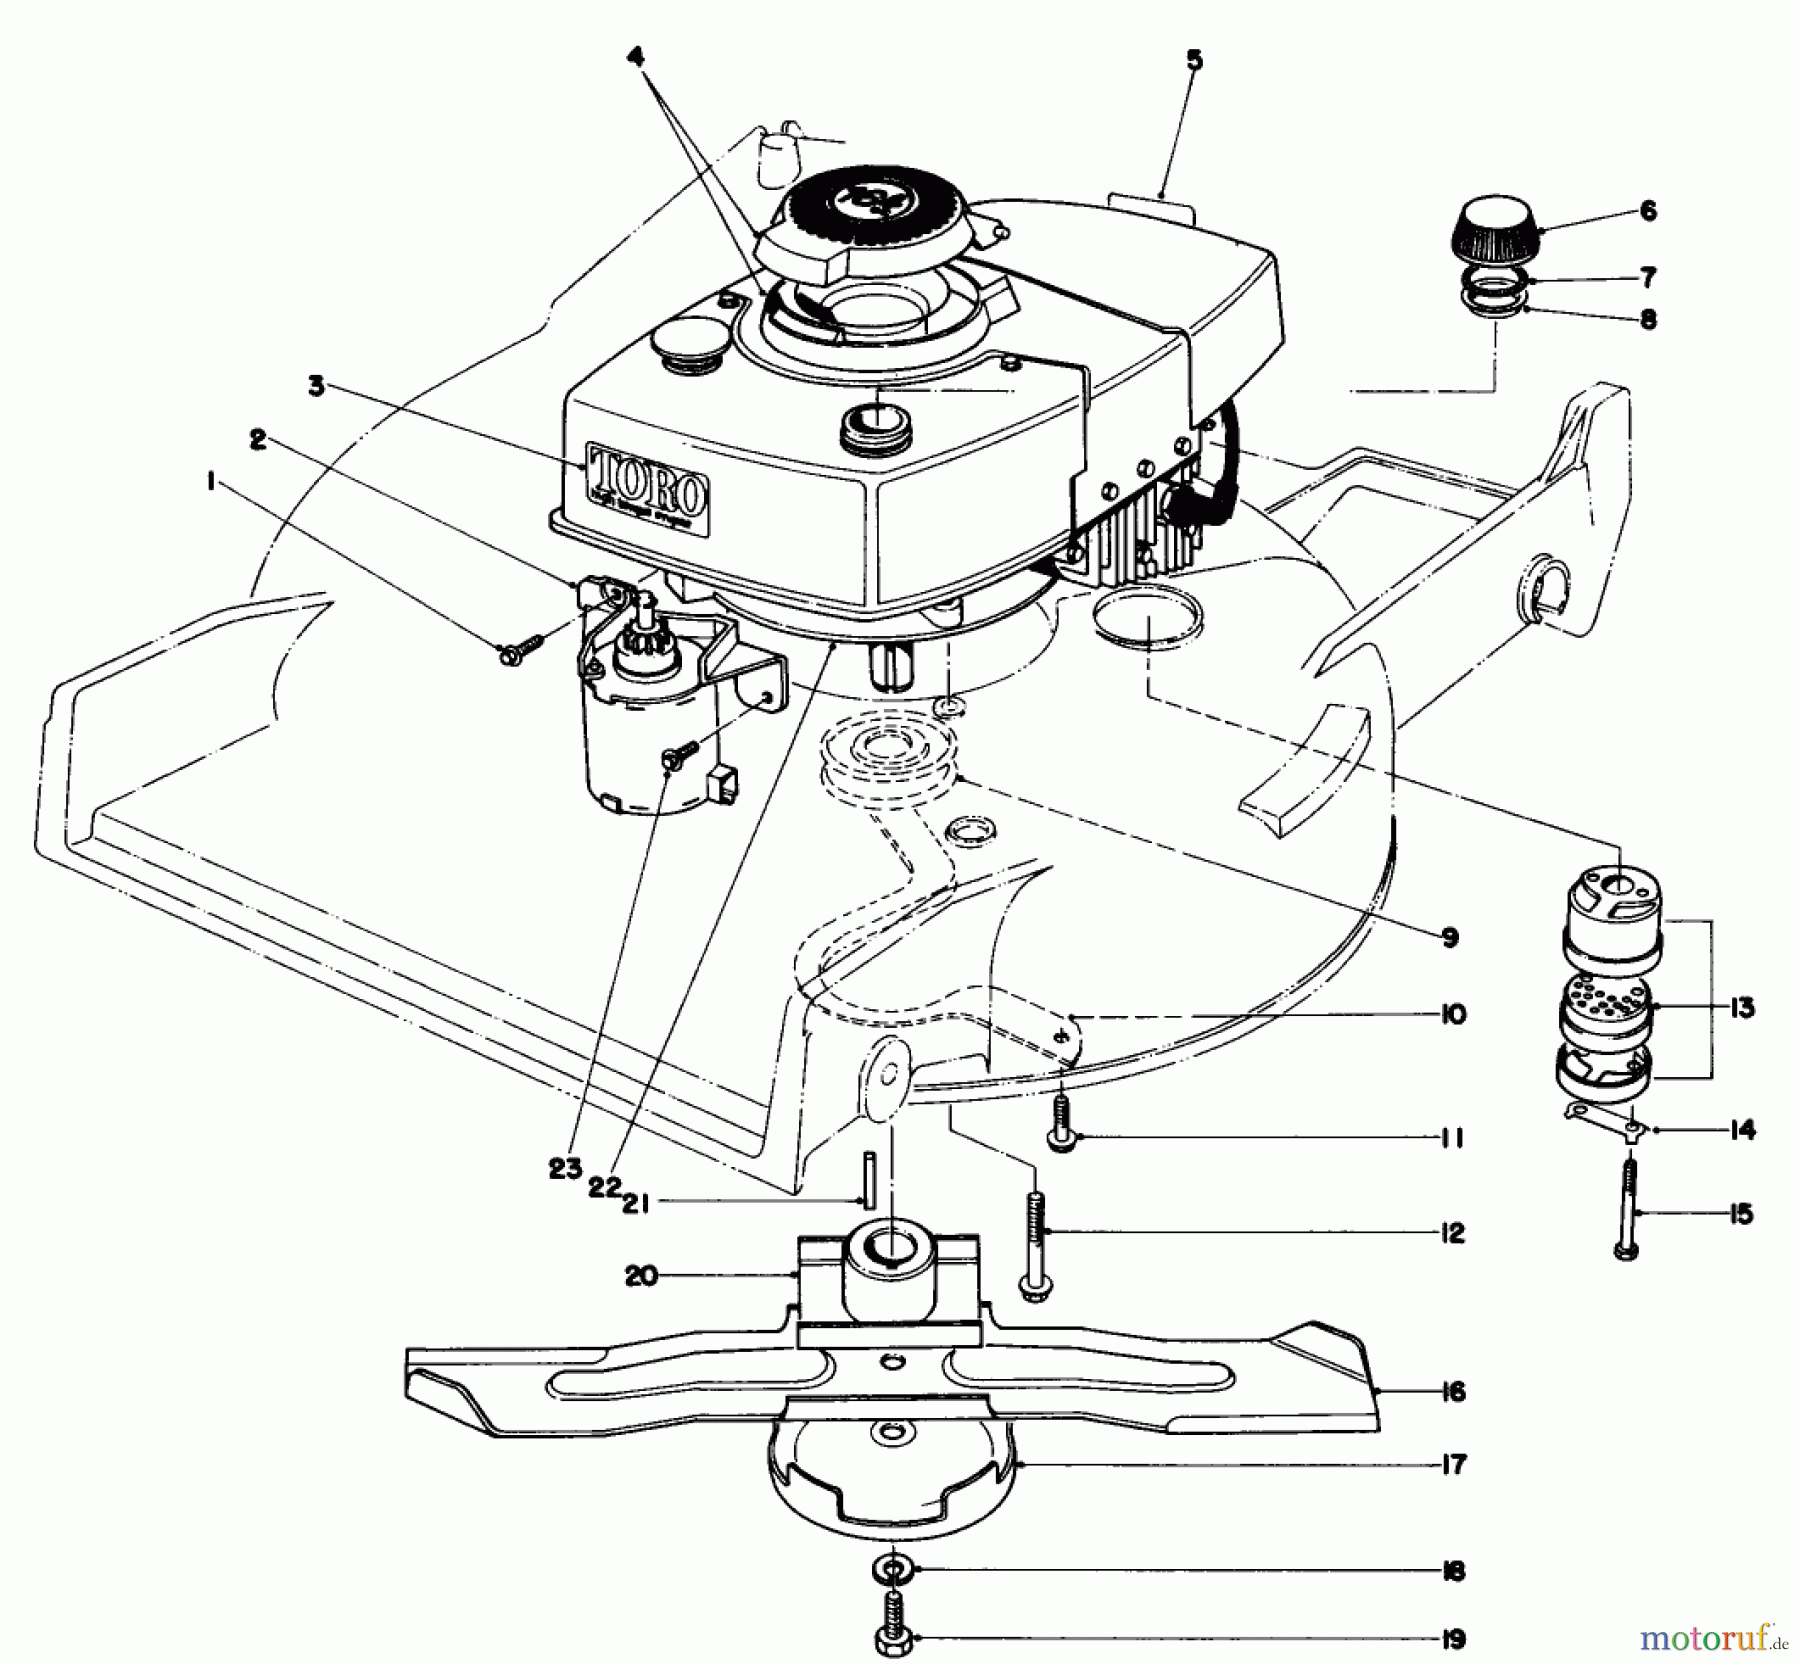  Toro Neu Mowers, Walk-Behind Seite 1 20715 - Toro Lawnmower, 1980 (0000001-0999999) ENGINE ASSEMBLY